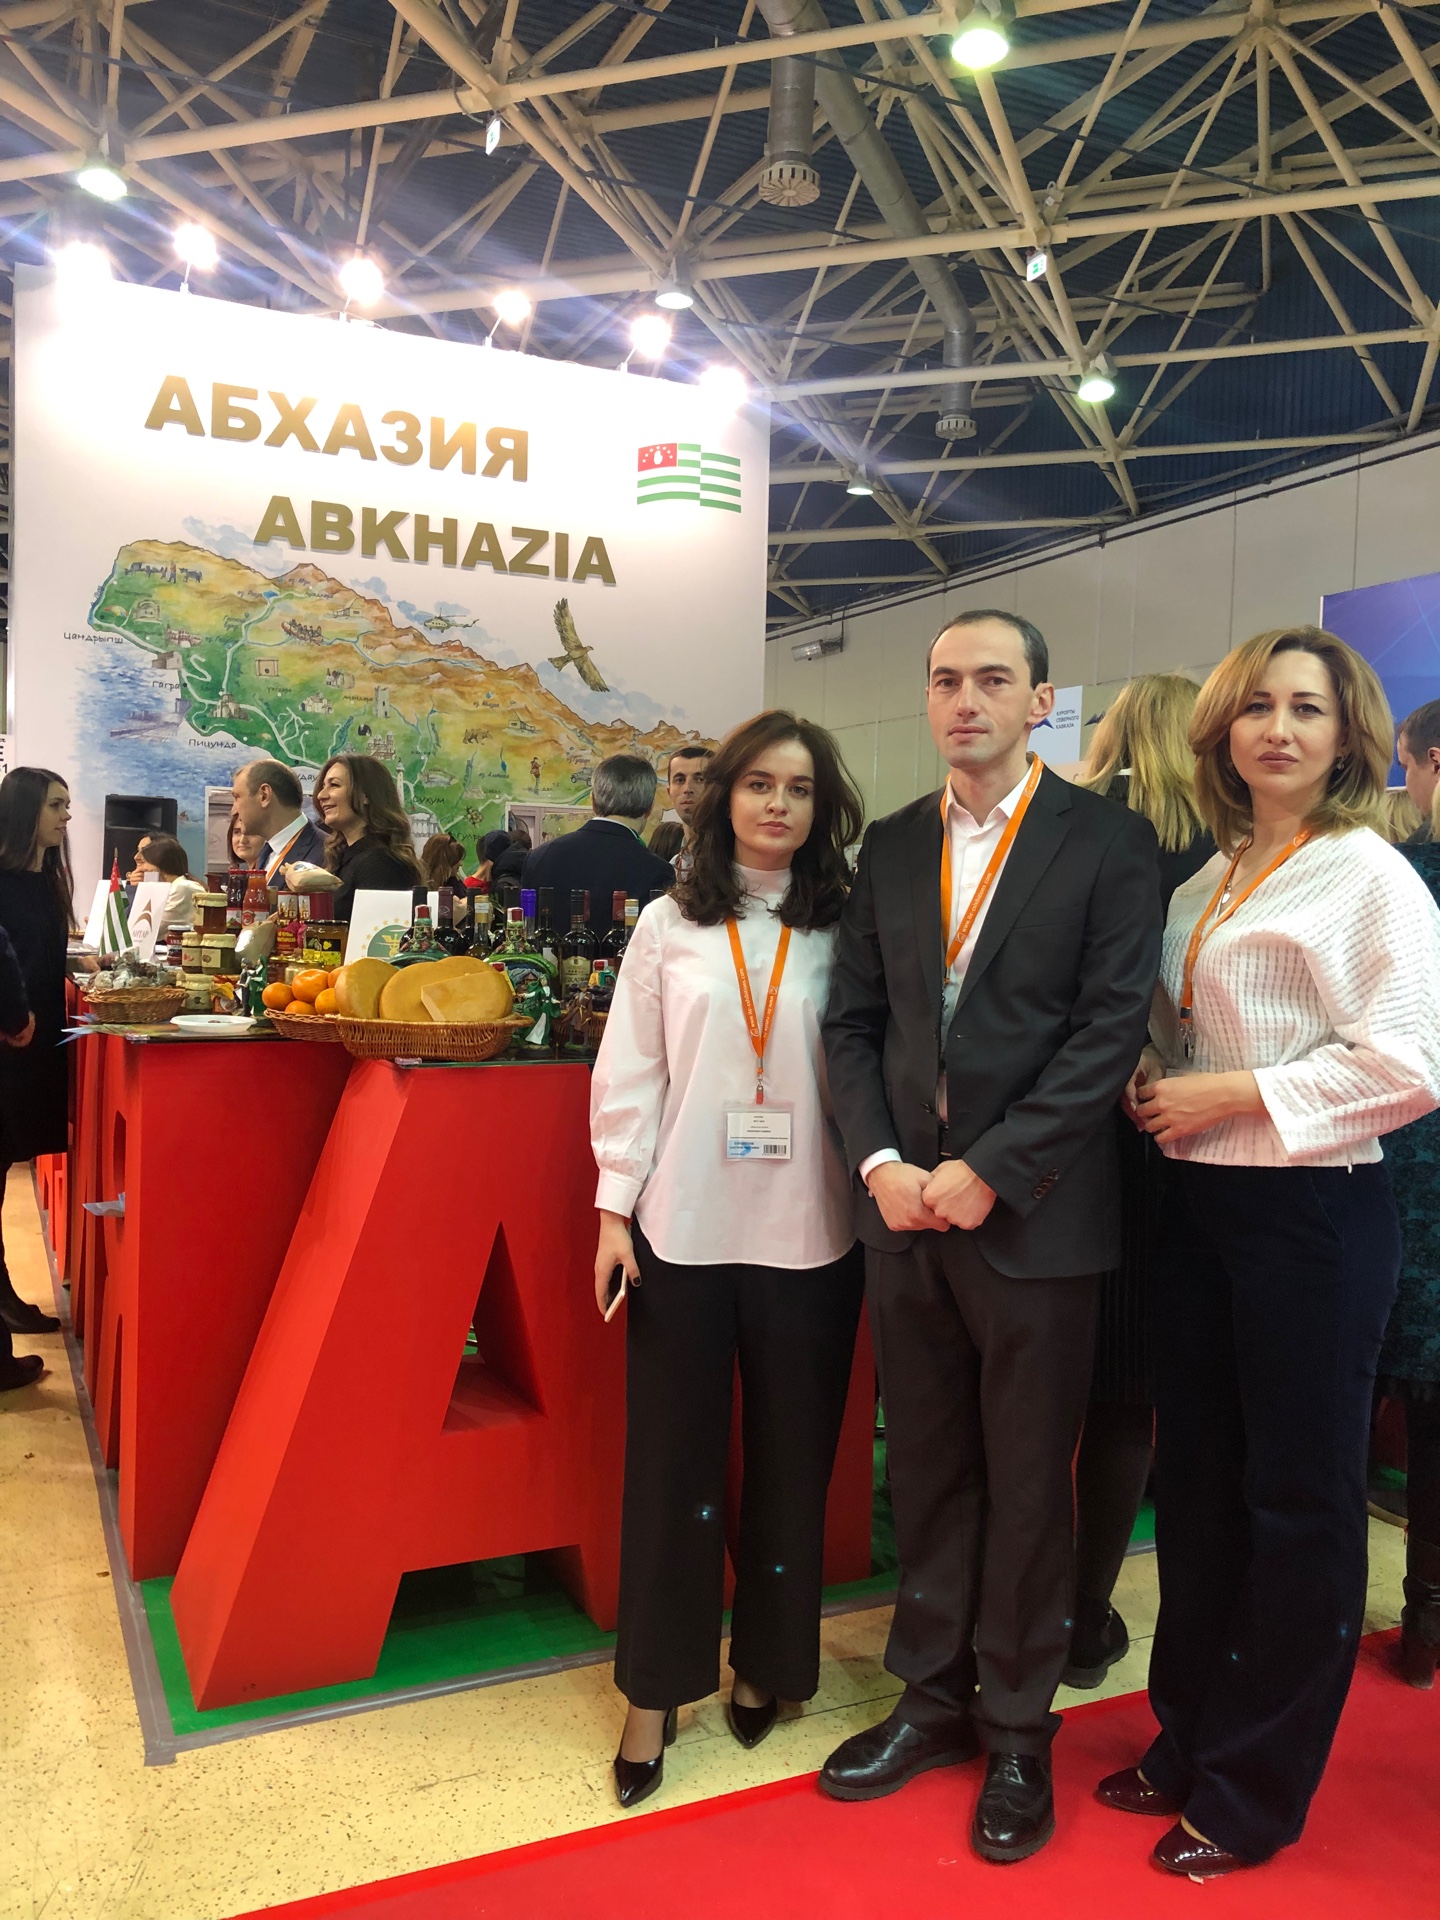 غرفة تجارة و صناعة جمهورية أبخازيا في المعرض الدولي في موسكو .